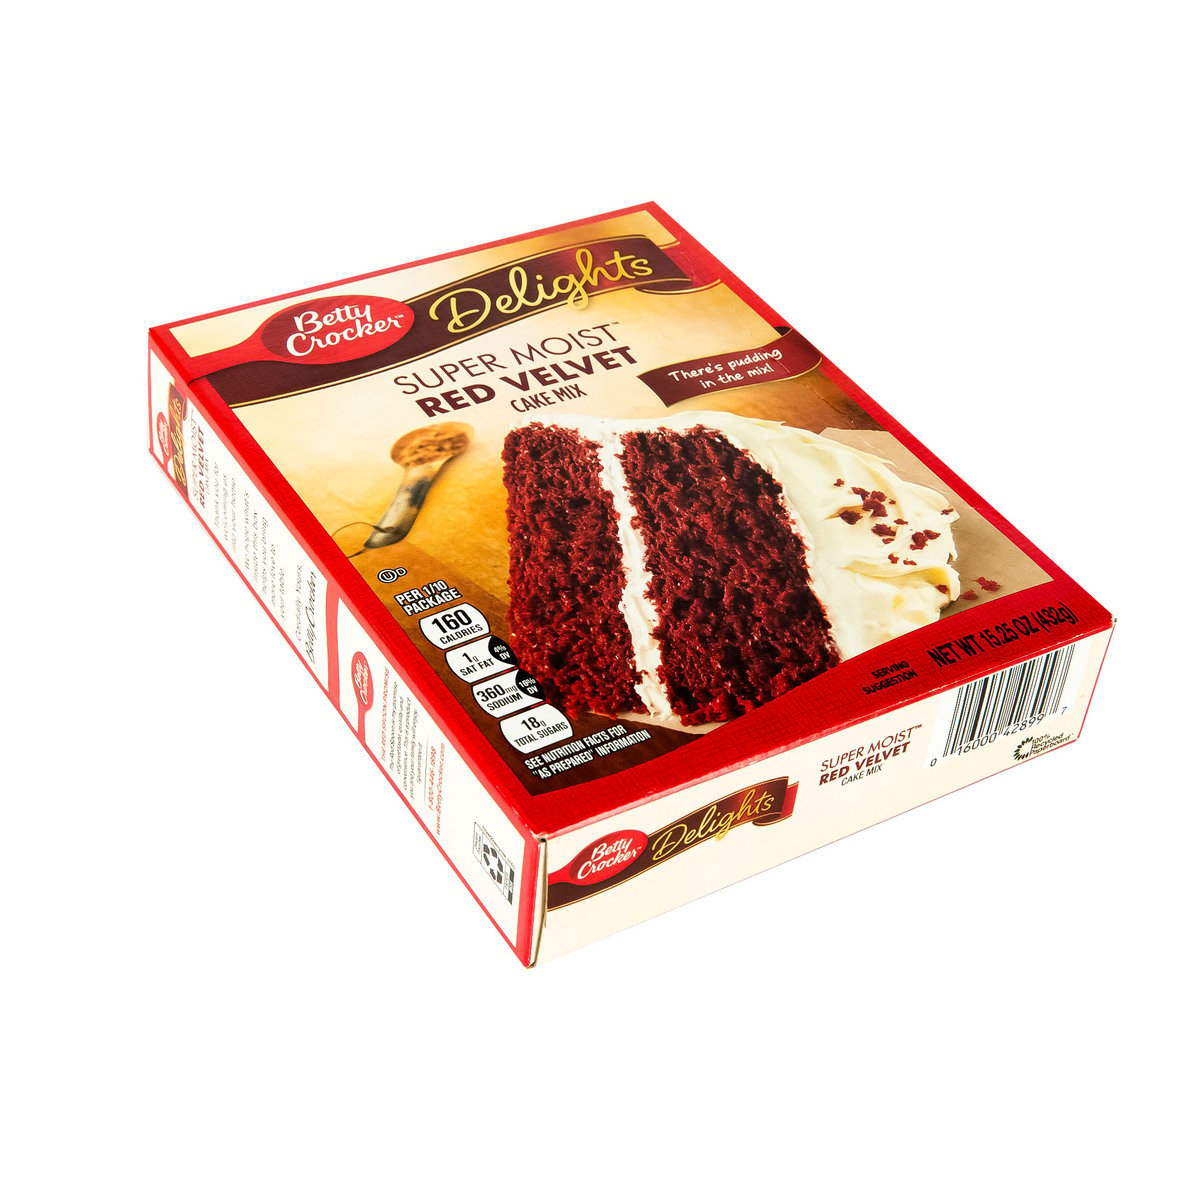 Betty Crocker Super Moist Red Velvet Cake Mix 432 g